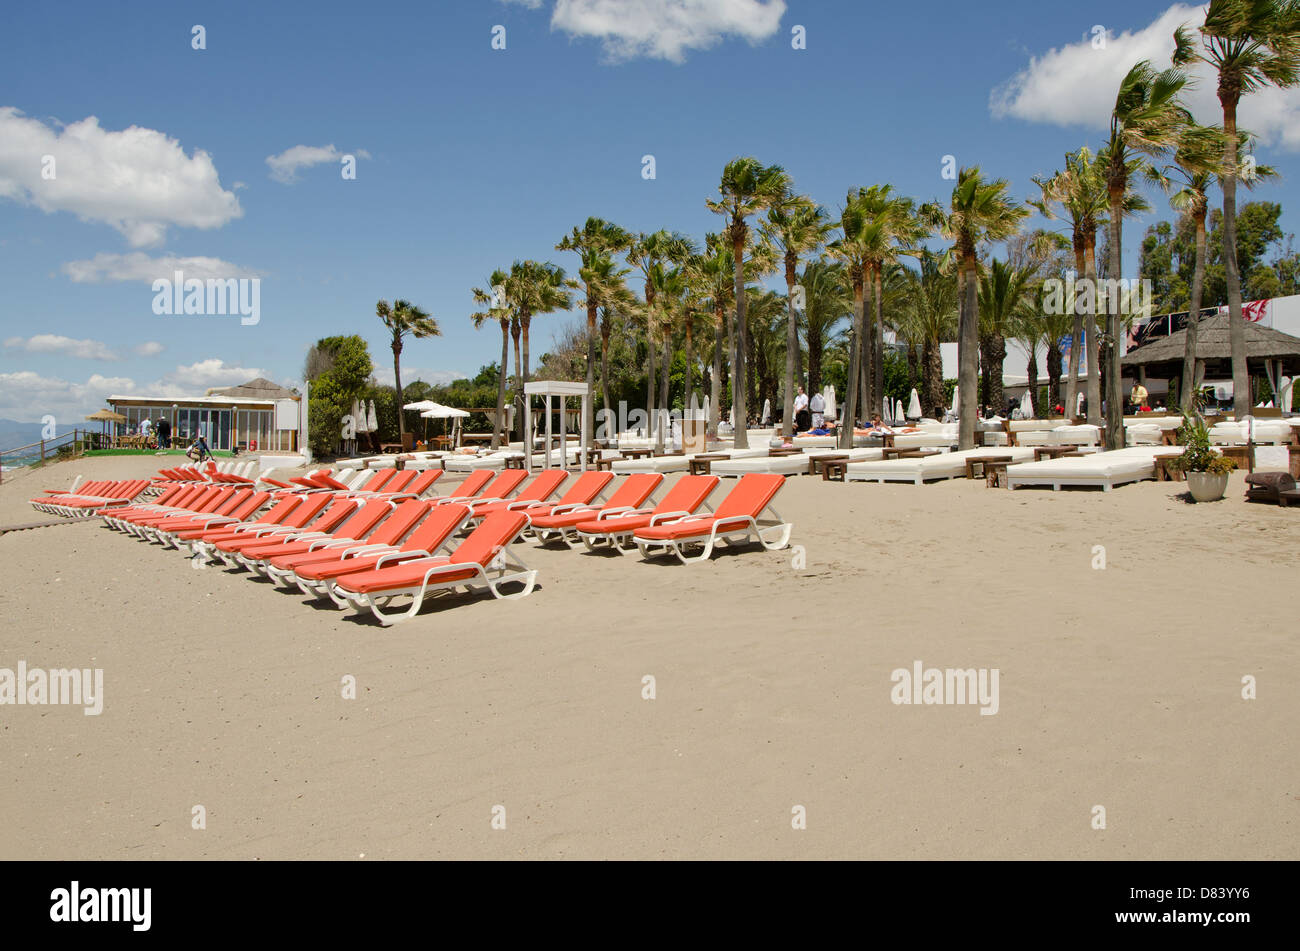 Nikki beach marbella fotografías e imágenes de alta resolución - Alamy